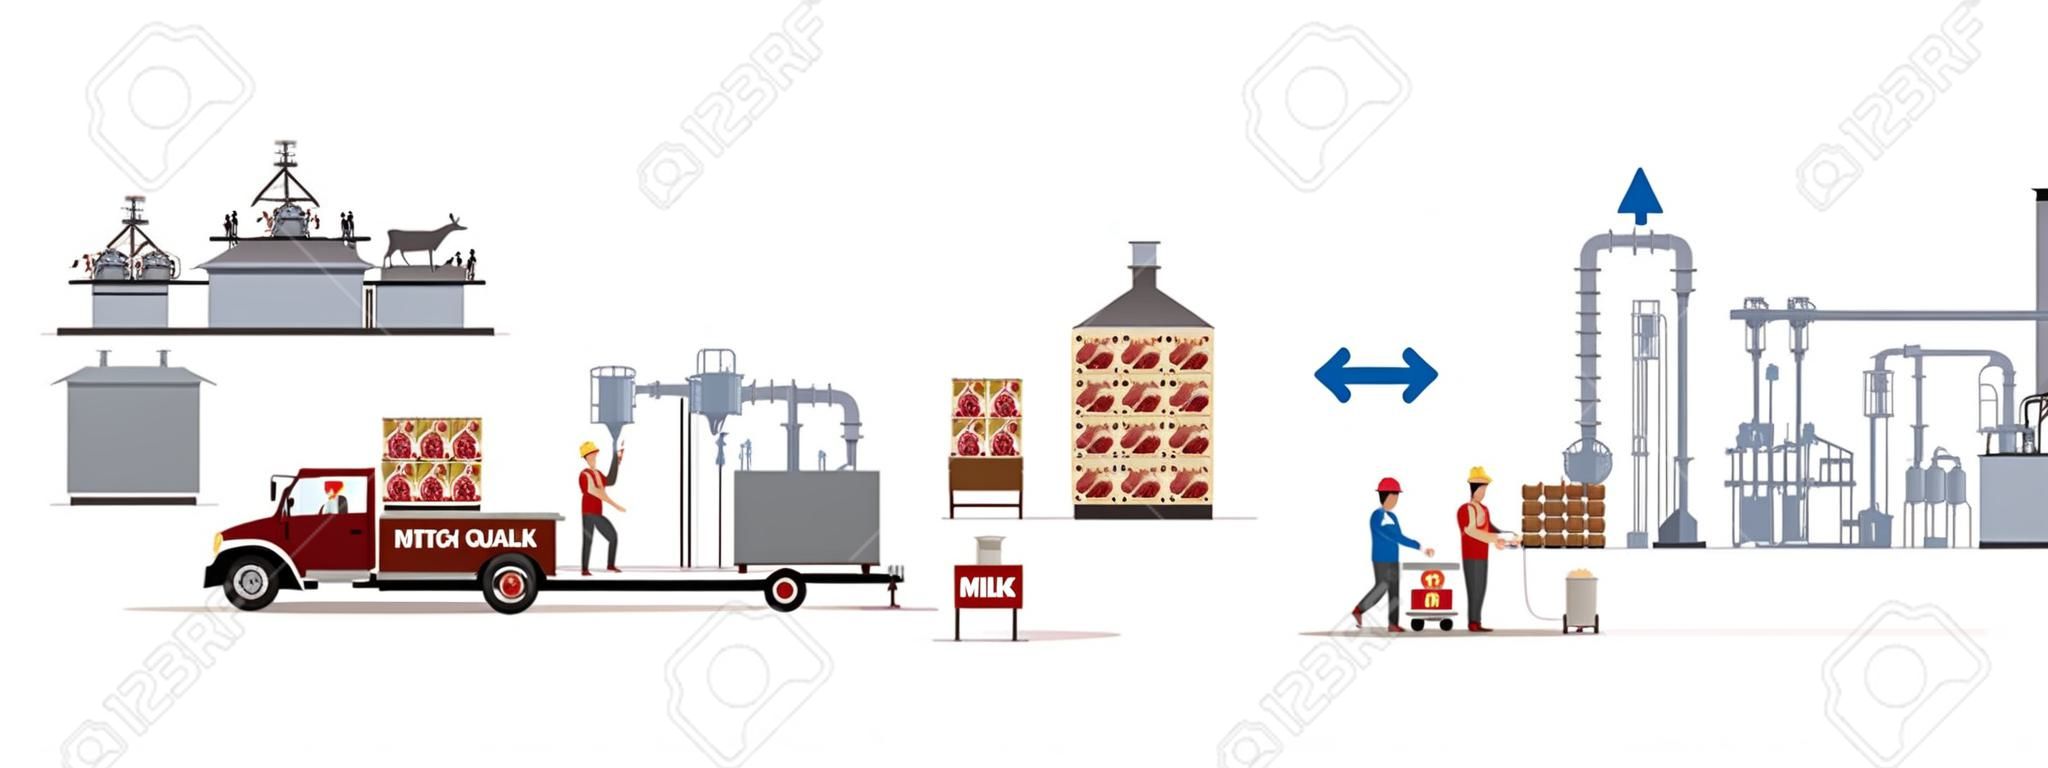 Молочно-мясной комбинат с автоматами и рабочими. Векторная иллюстрация.